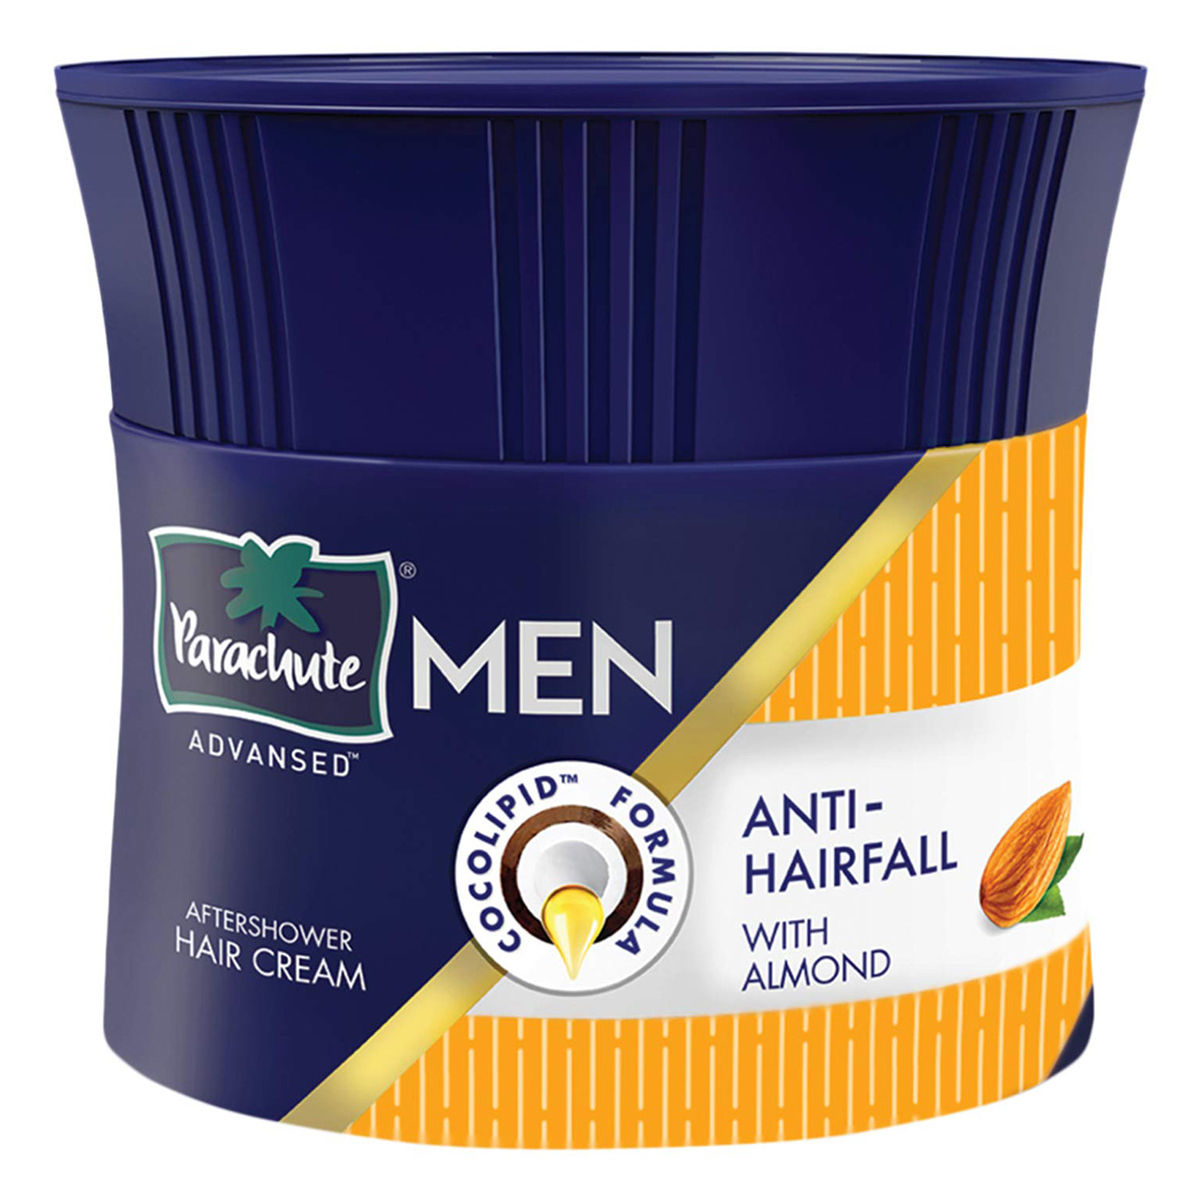 Himalaya Herbals Anti Hair Fall Cream Review - Khushi Hamesha